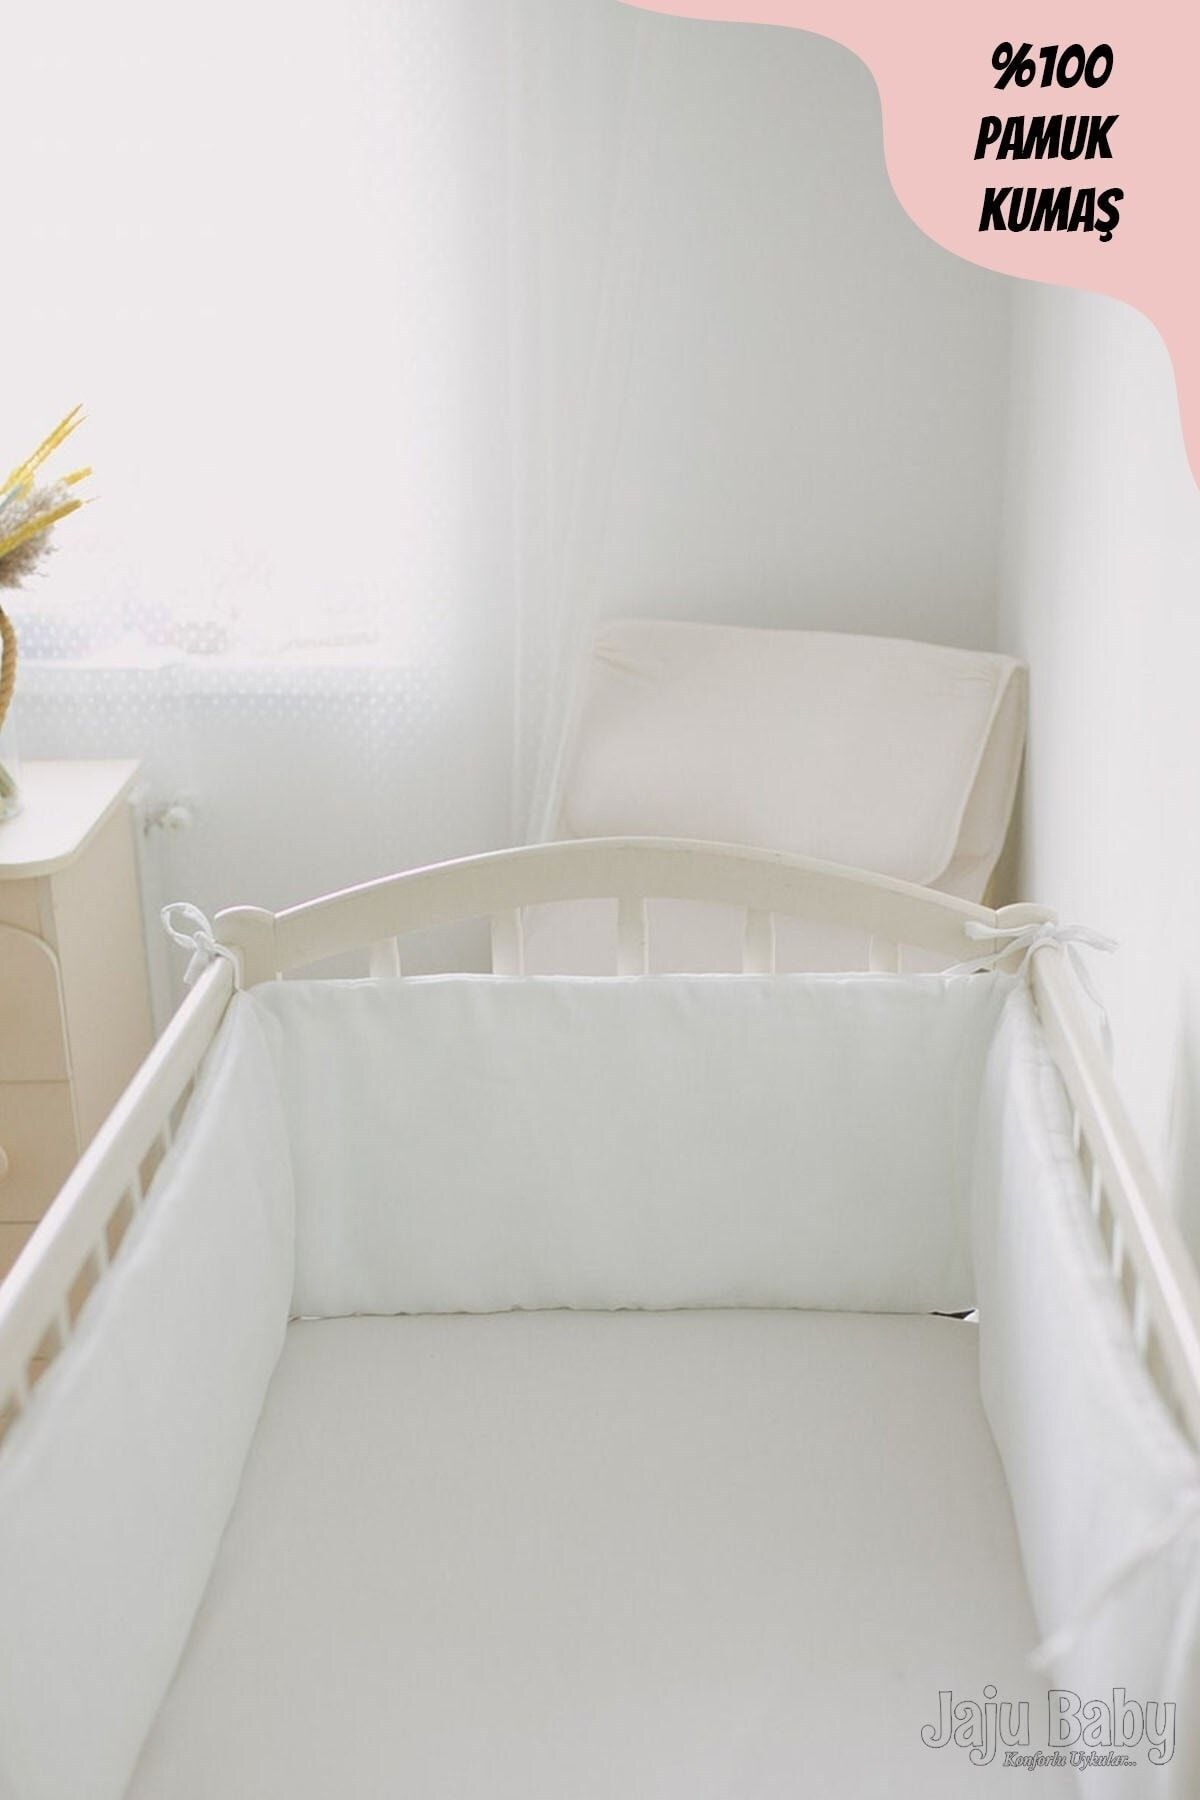 Jaju Baby Düz Beyaz 70x140 Beşik / Montessori Kenar Koruma Beşik Bariyer